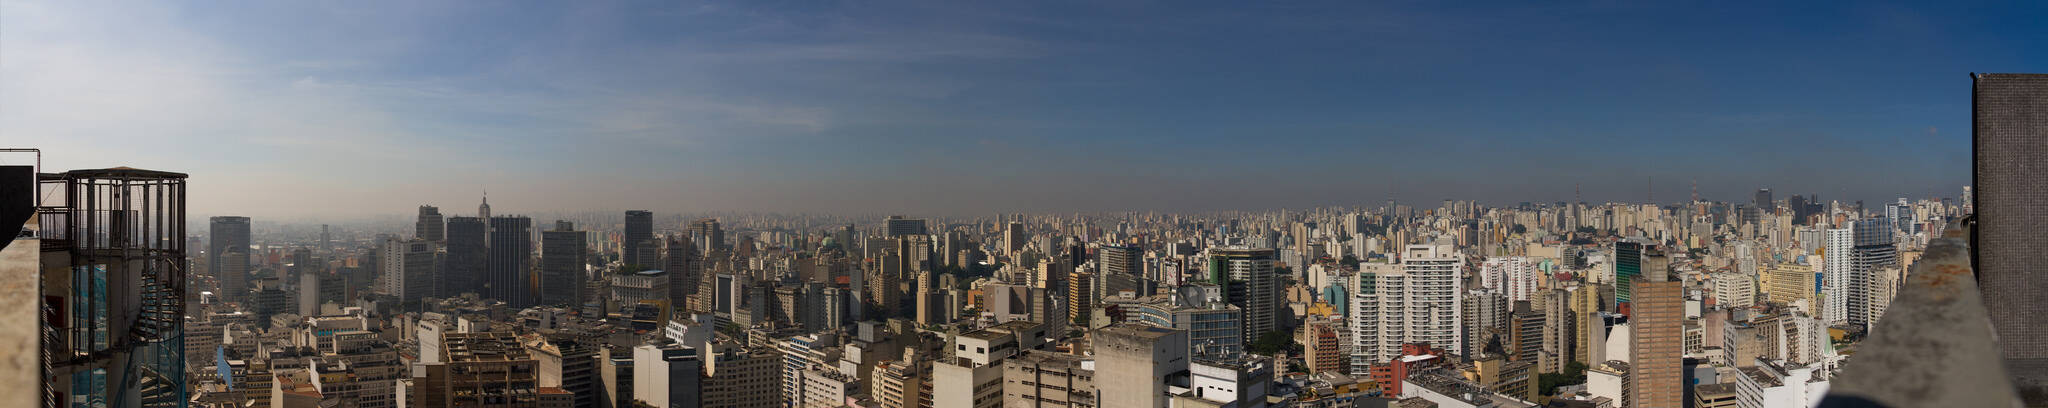 Do topo do Edifício Copan, projetado por Oscar Niemeyer, a vista da cidade de São Paulo é de tirar o fôlego. Foto: Reprodução/Flickr/Hugo Martins